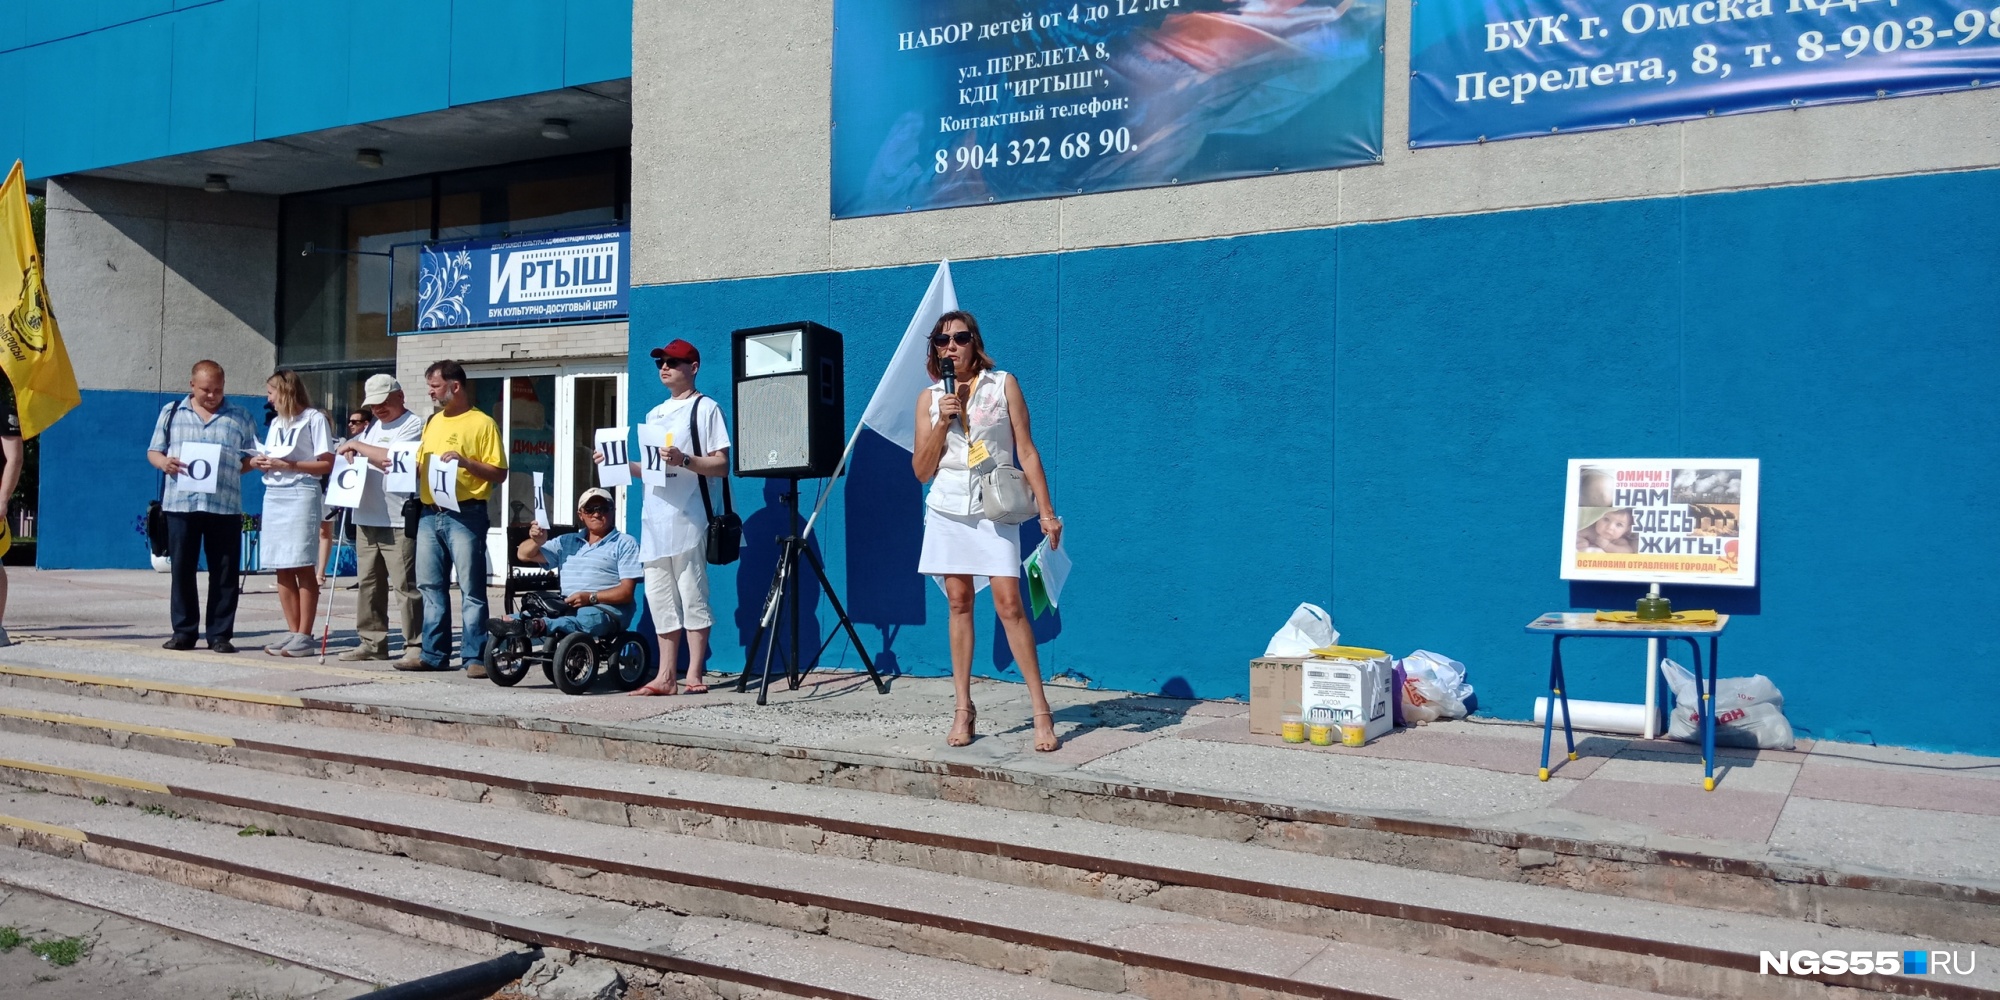 «Был город-сад — стал город-ад»: в Омске прошел митинг против химических выбросов